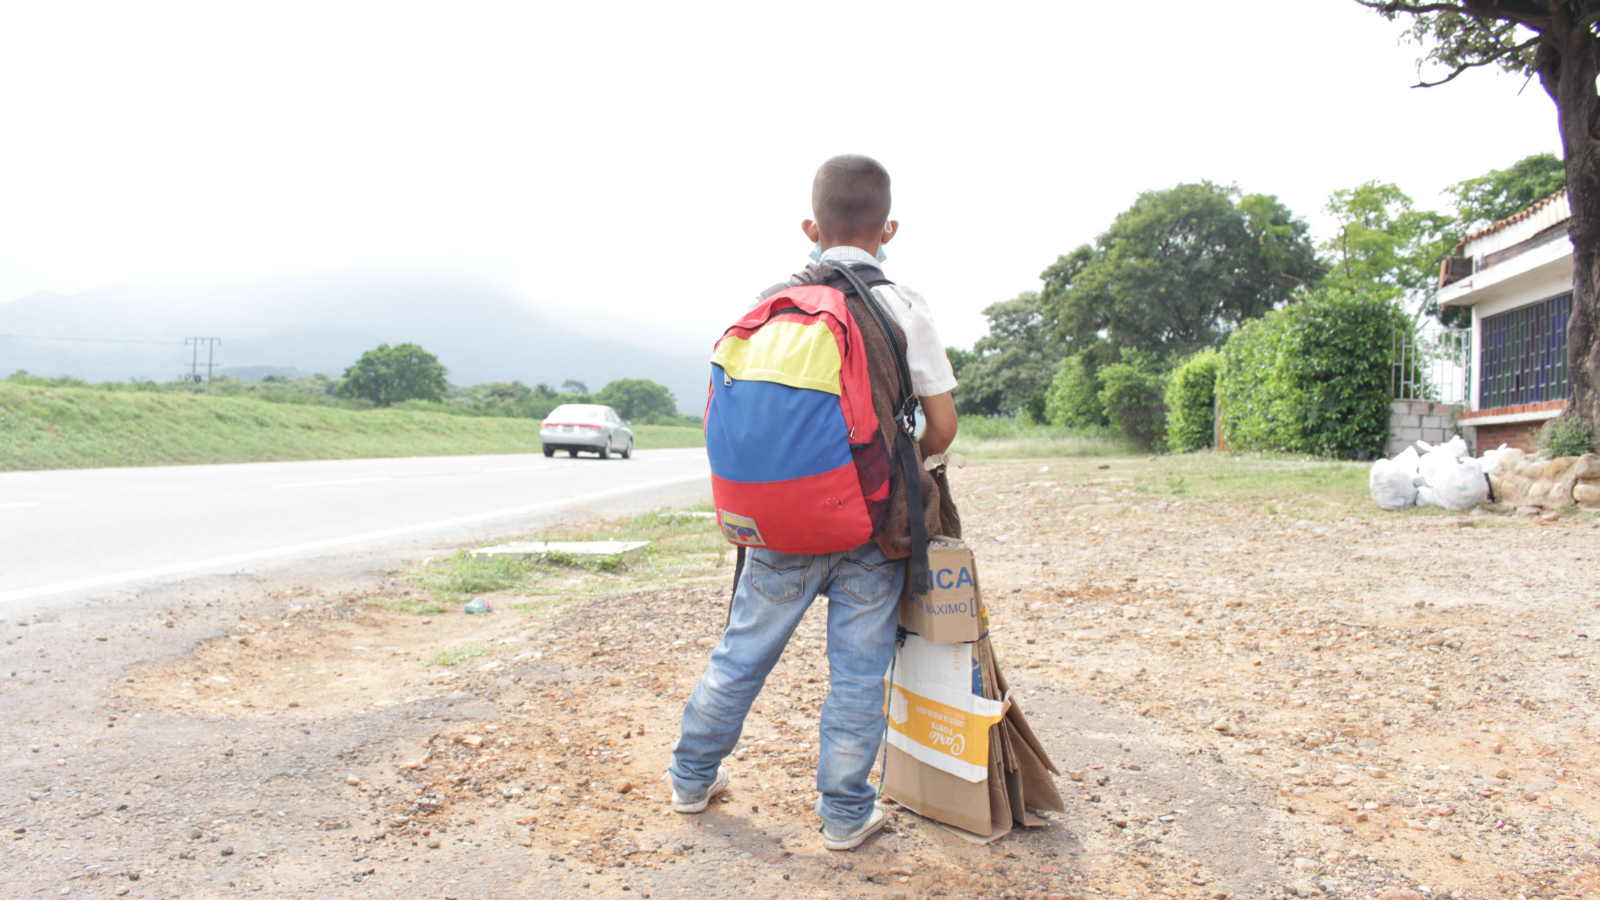 Niñez venezolana vive un momento complejo de violencia y desatención